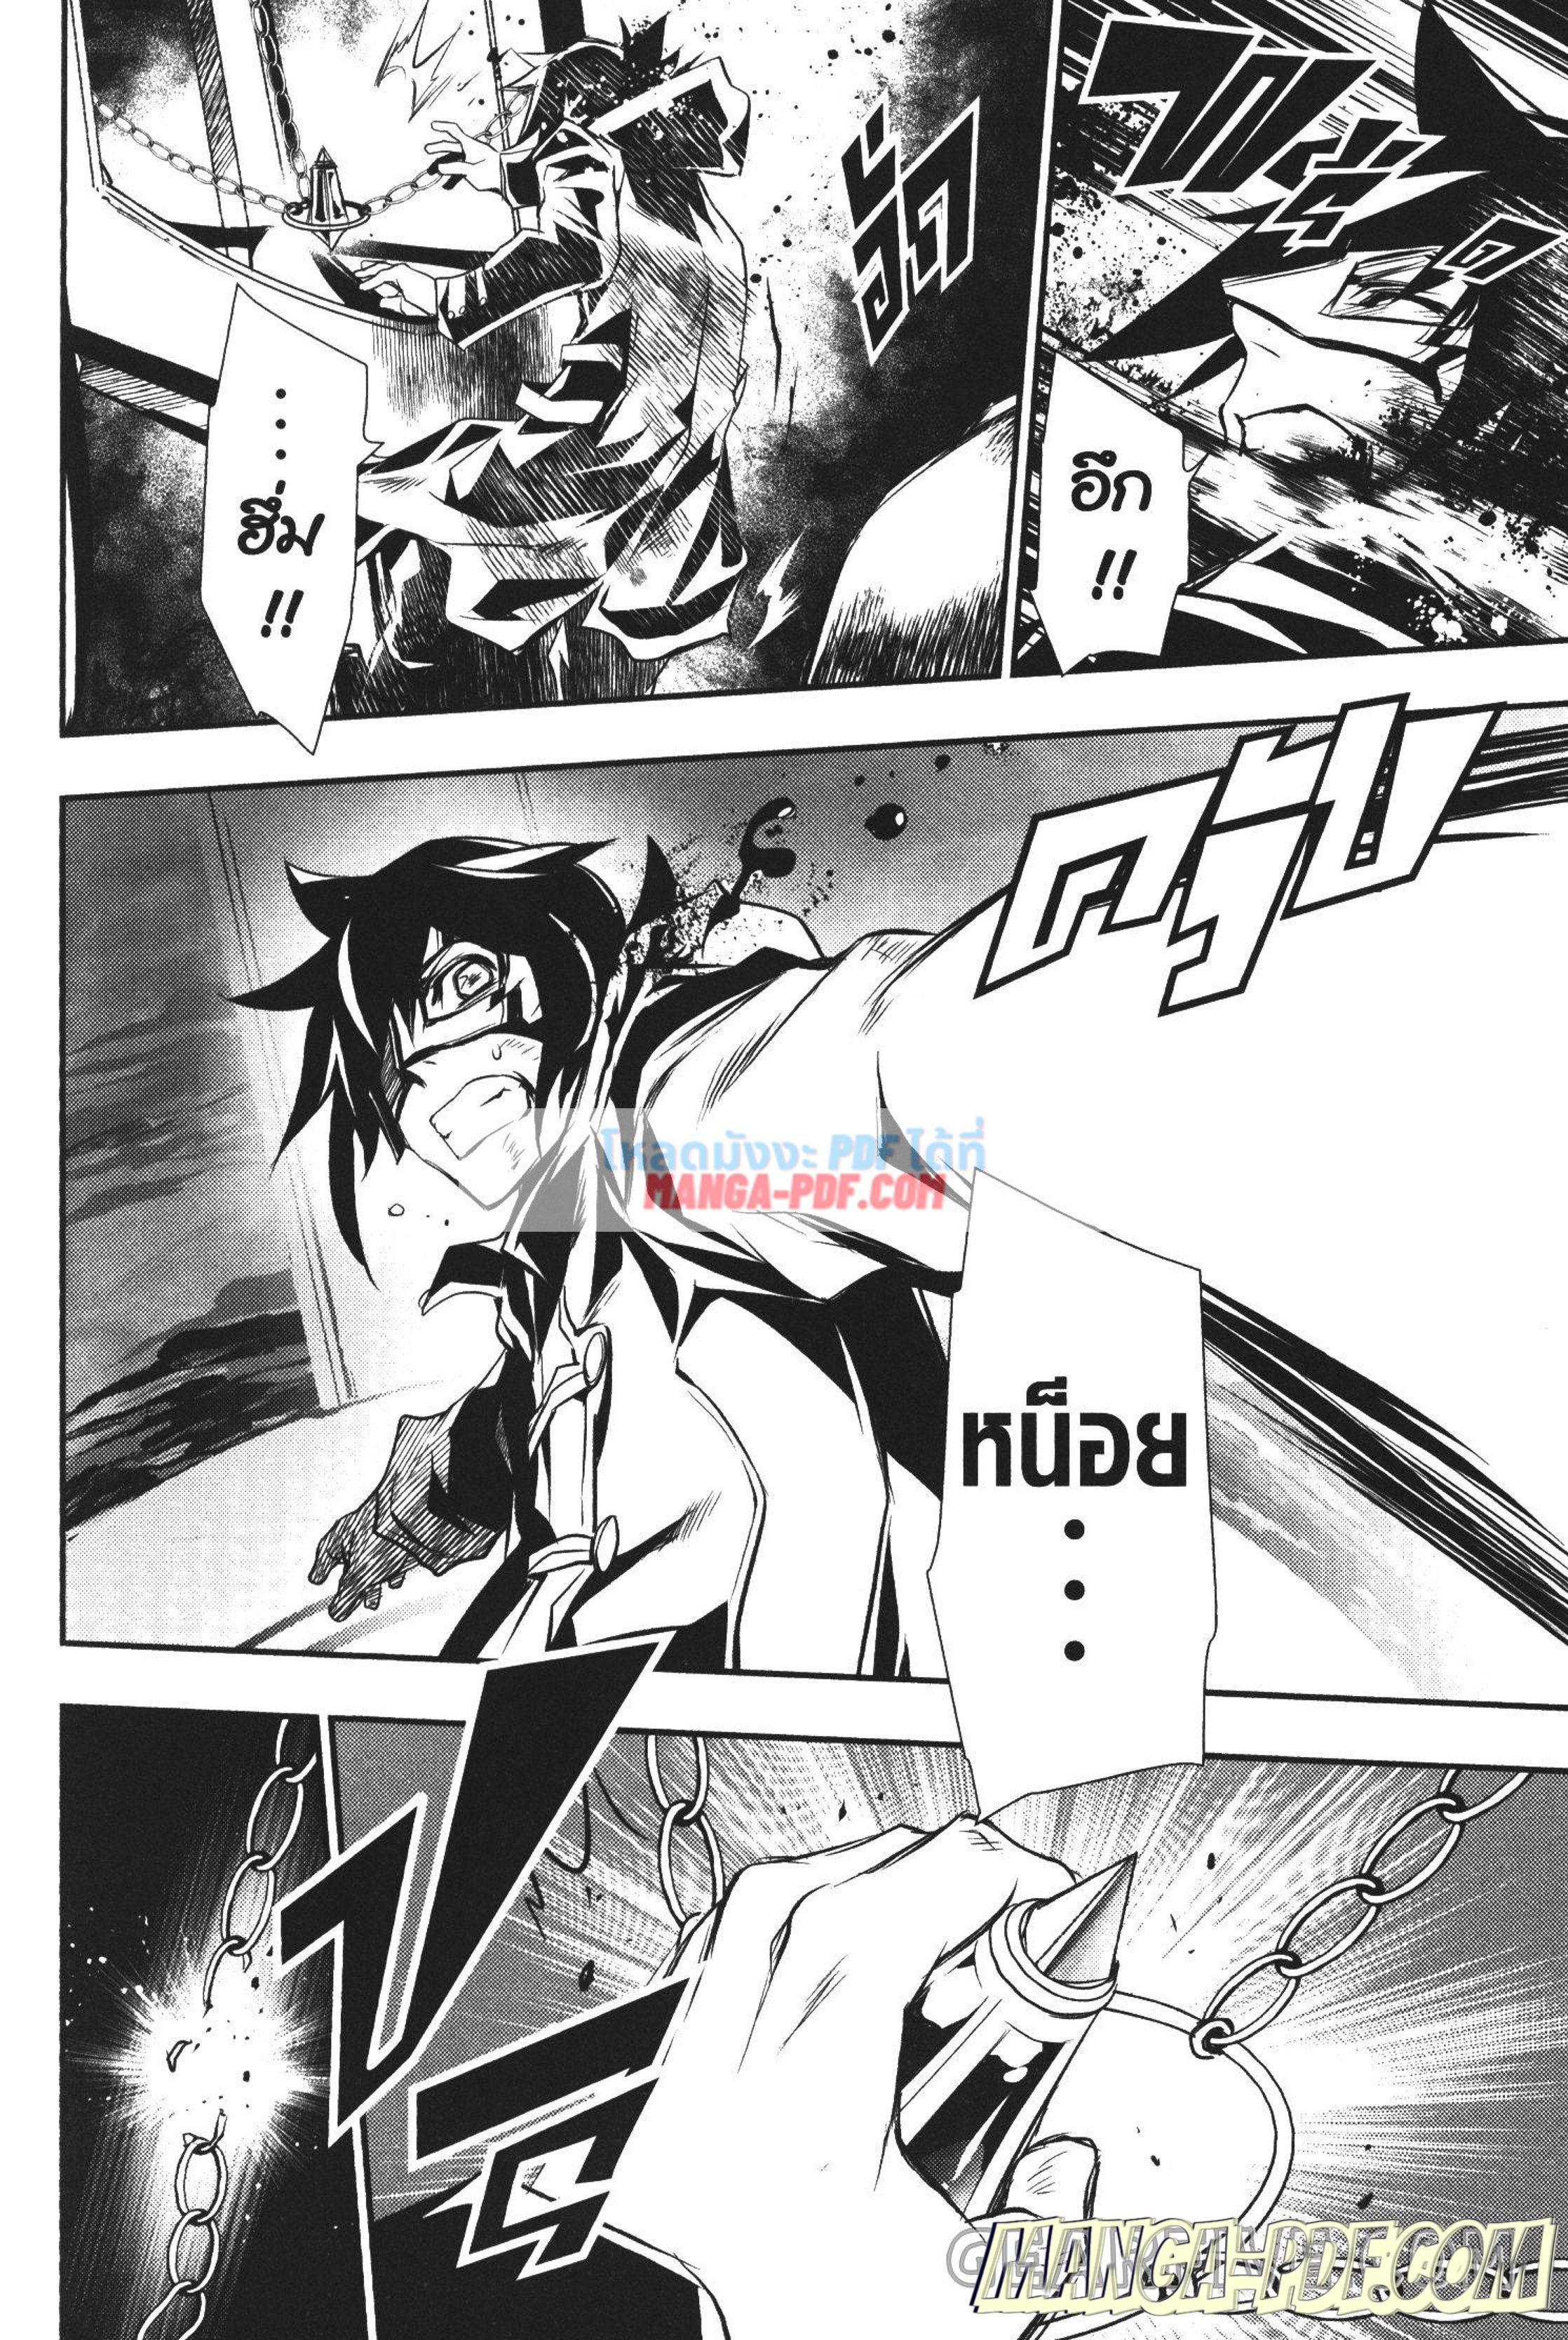 Shinju no Nectar 18 (12)